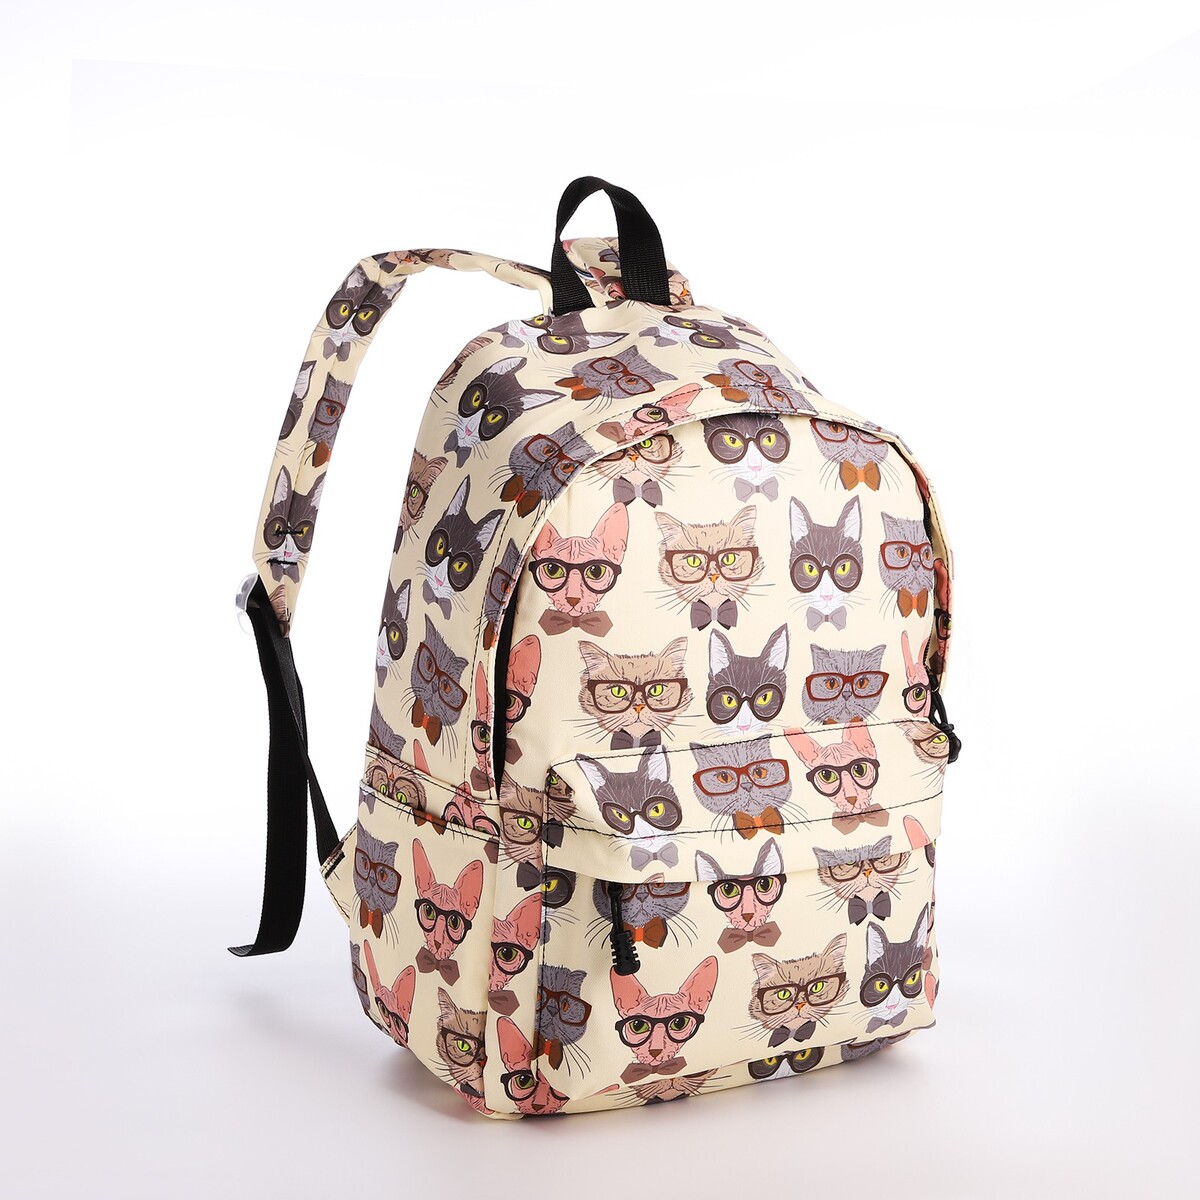 Рюкзак школьный из текстиля на молнии, 4 кармана, кошелек, цвет бежевый рюкзак молодежный из текстиля 3 кармана белый бежевый